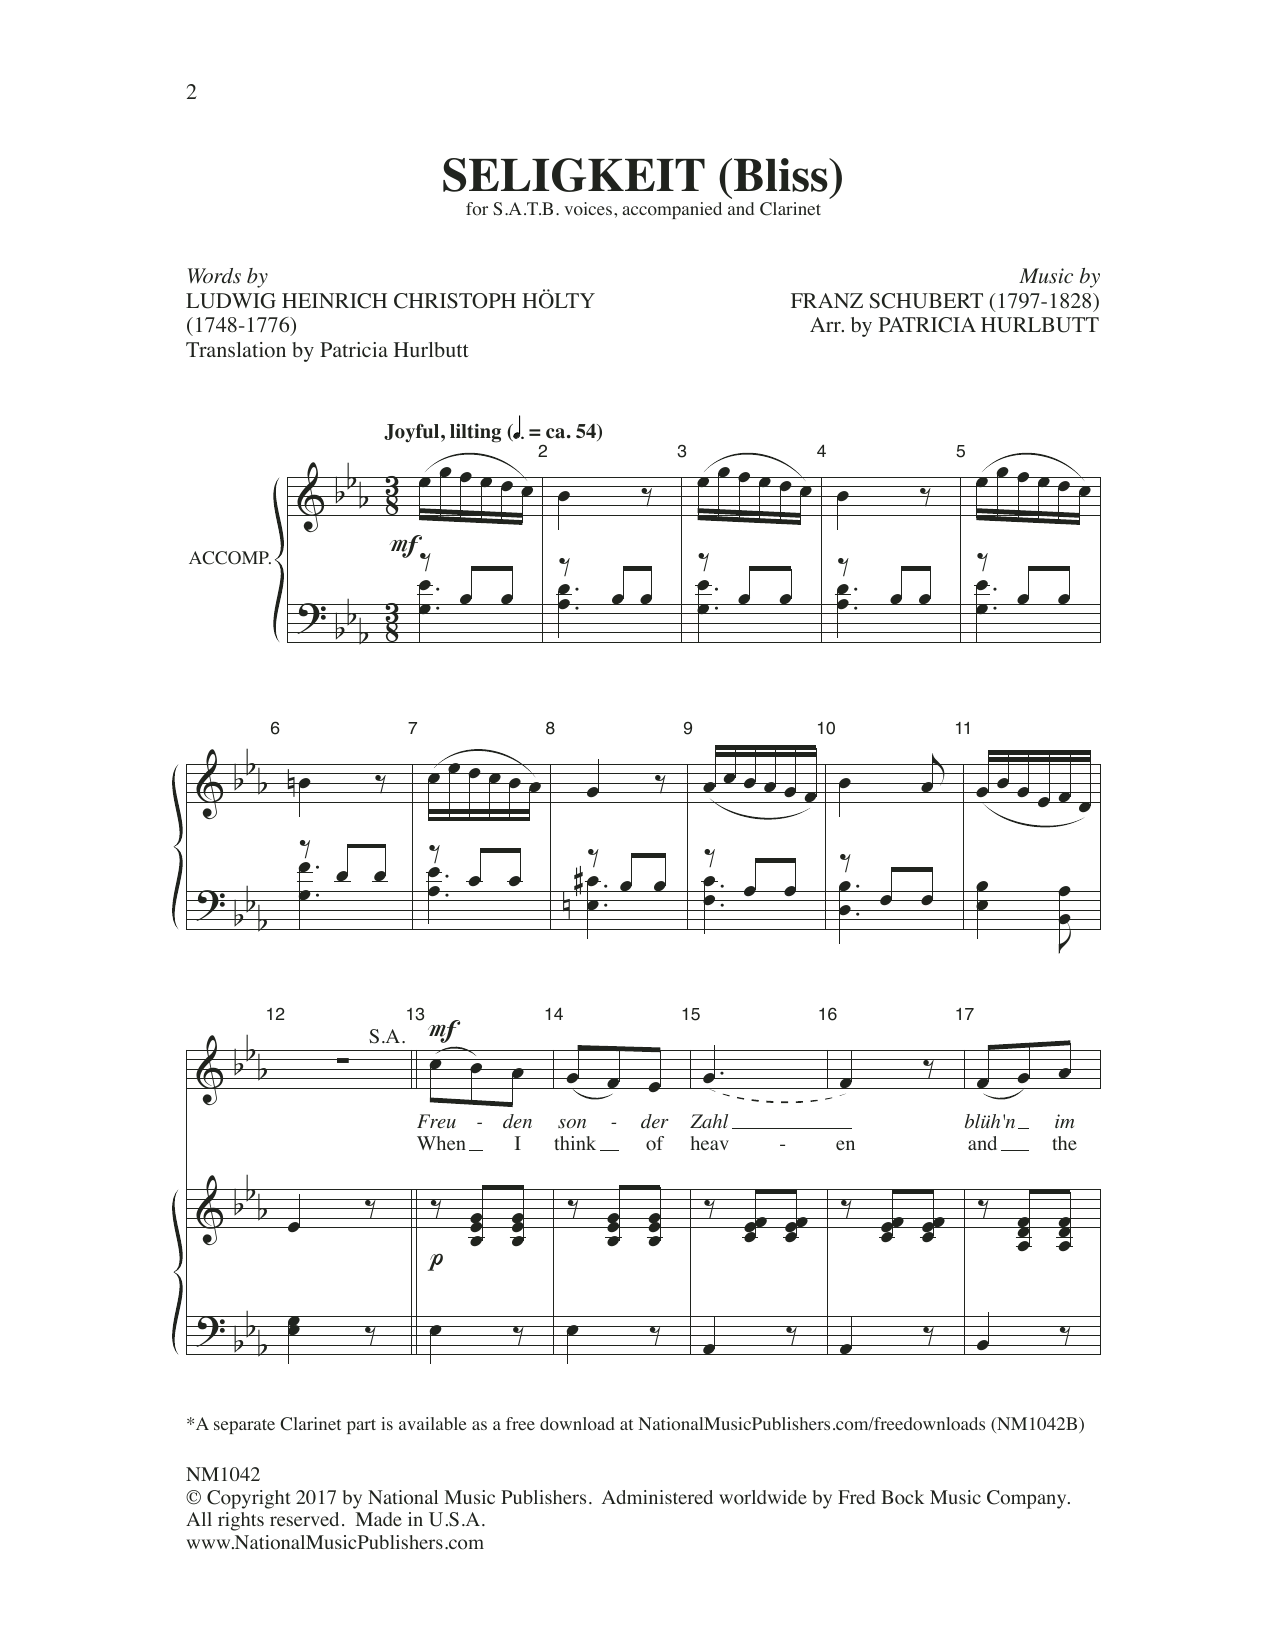 Download Franz Schubert Seligkeit (Bliss) Sheet Music